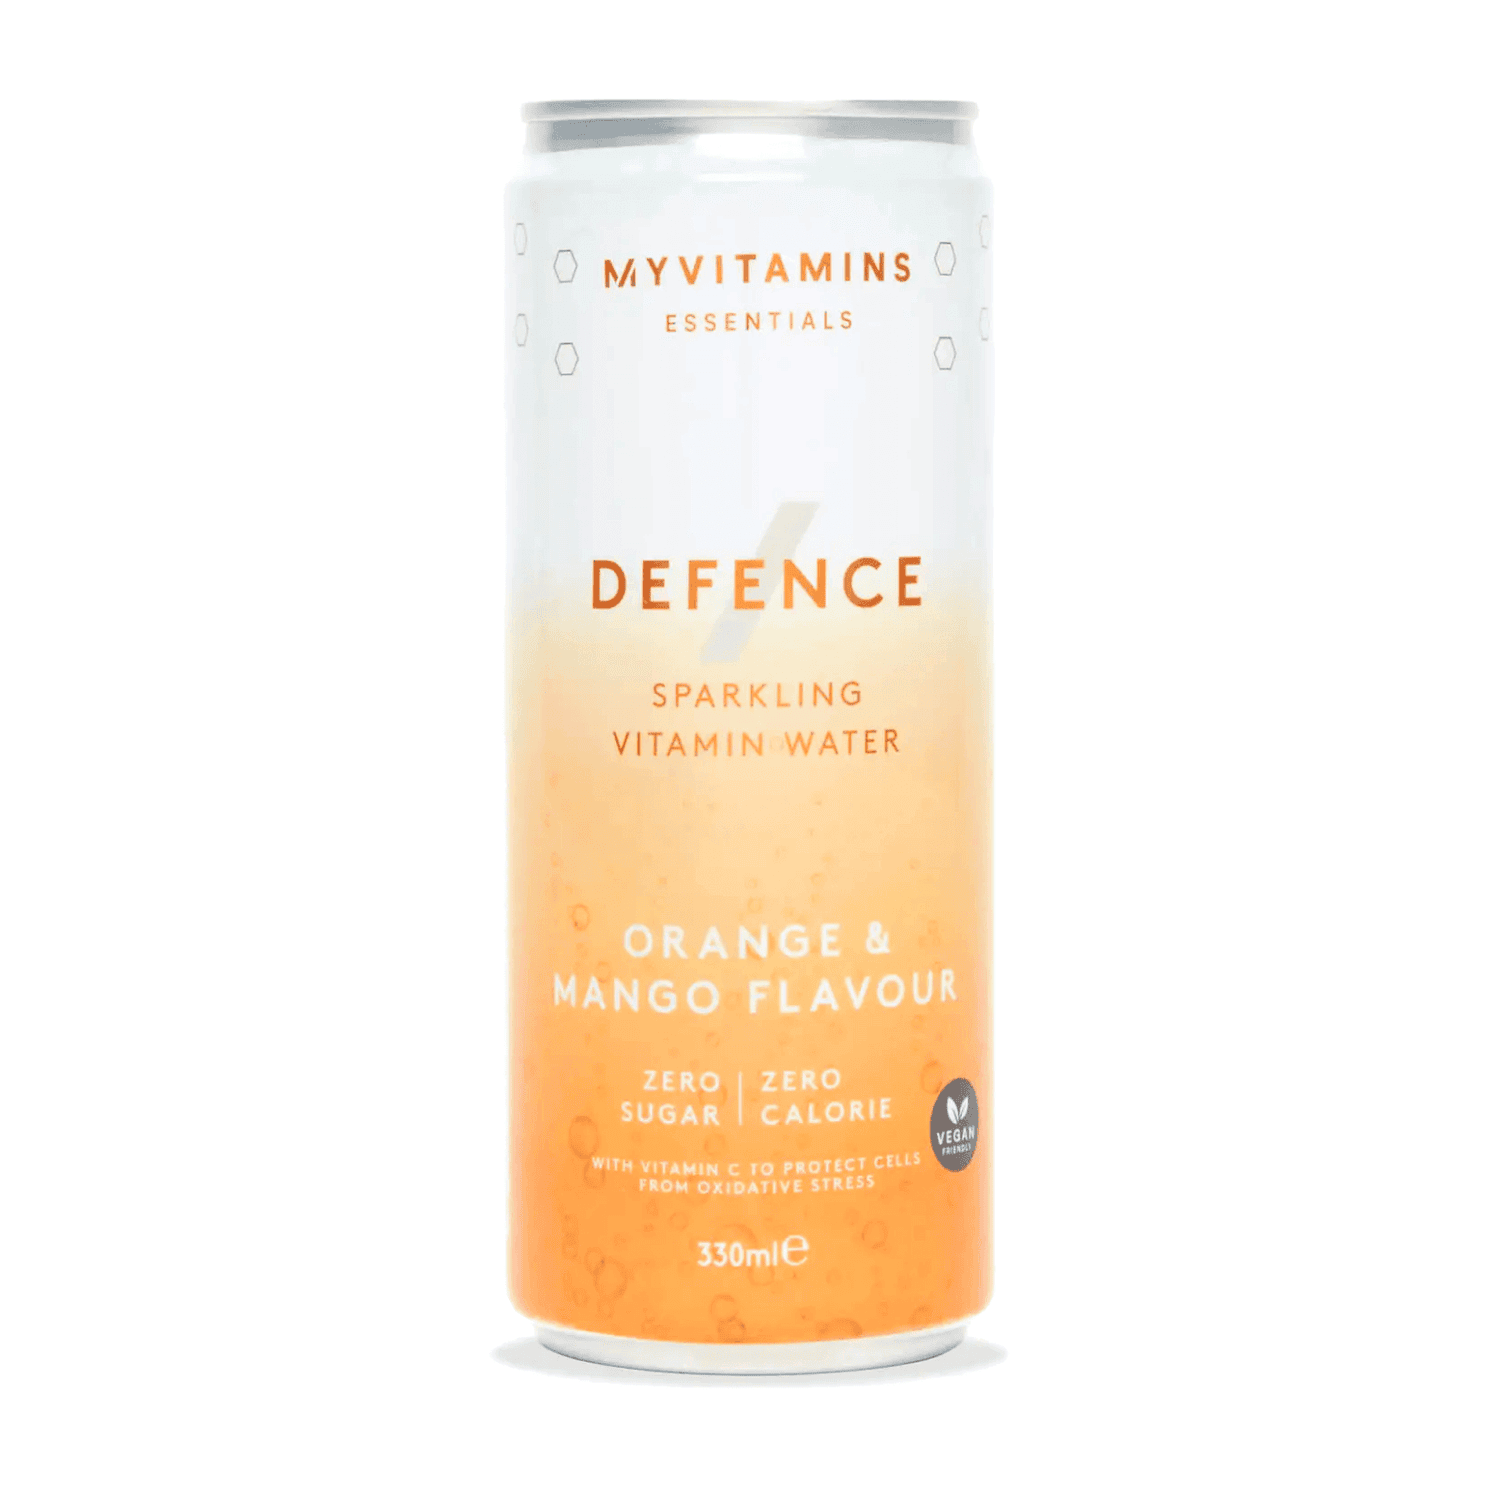 Defence – klar til at drikke